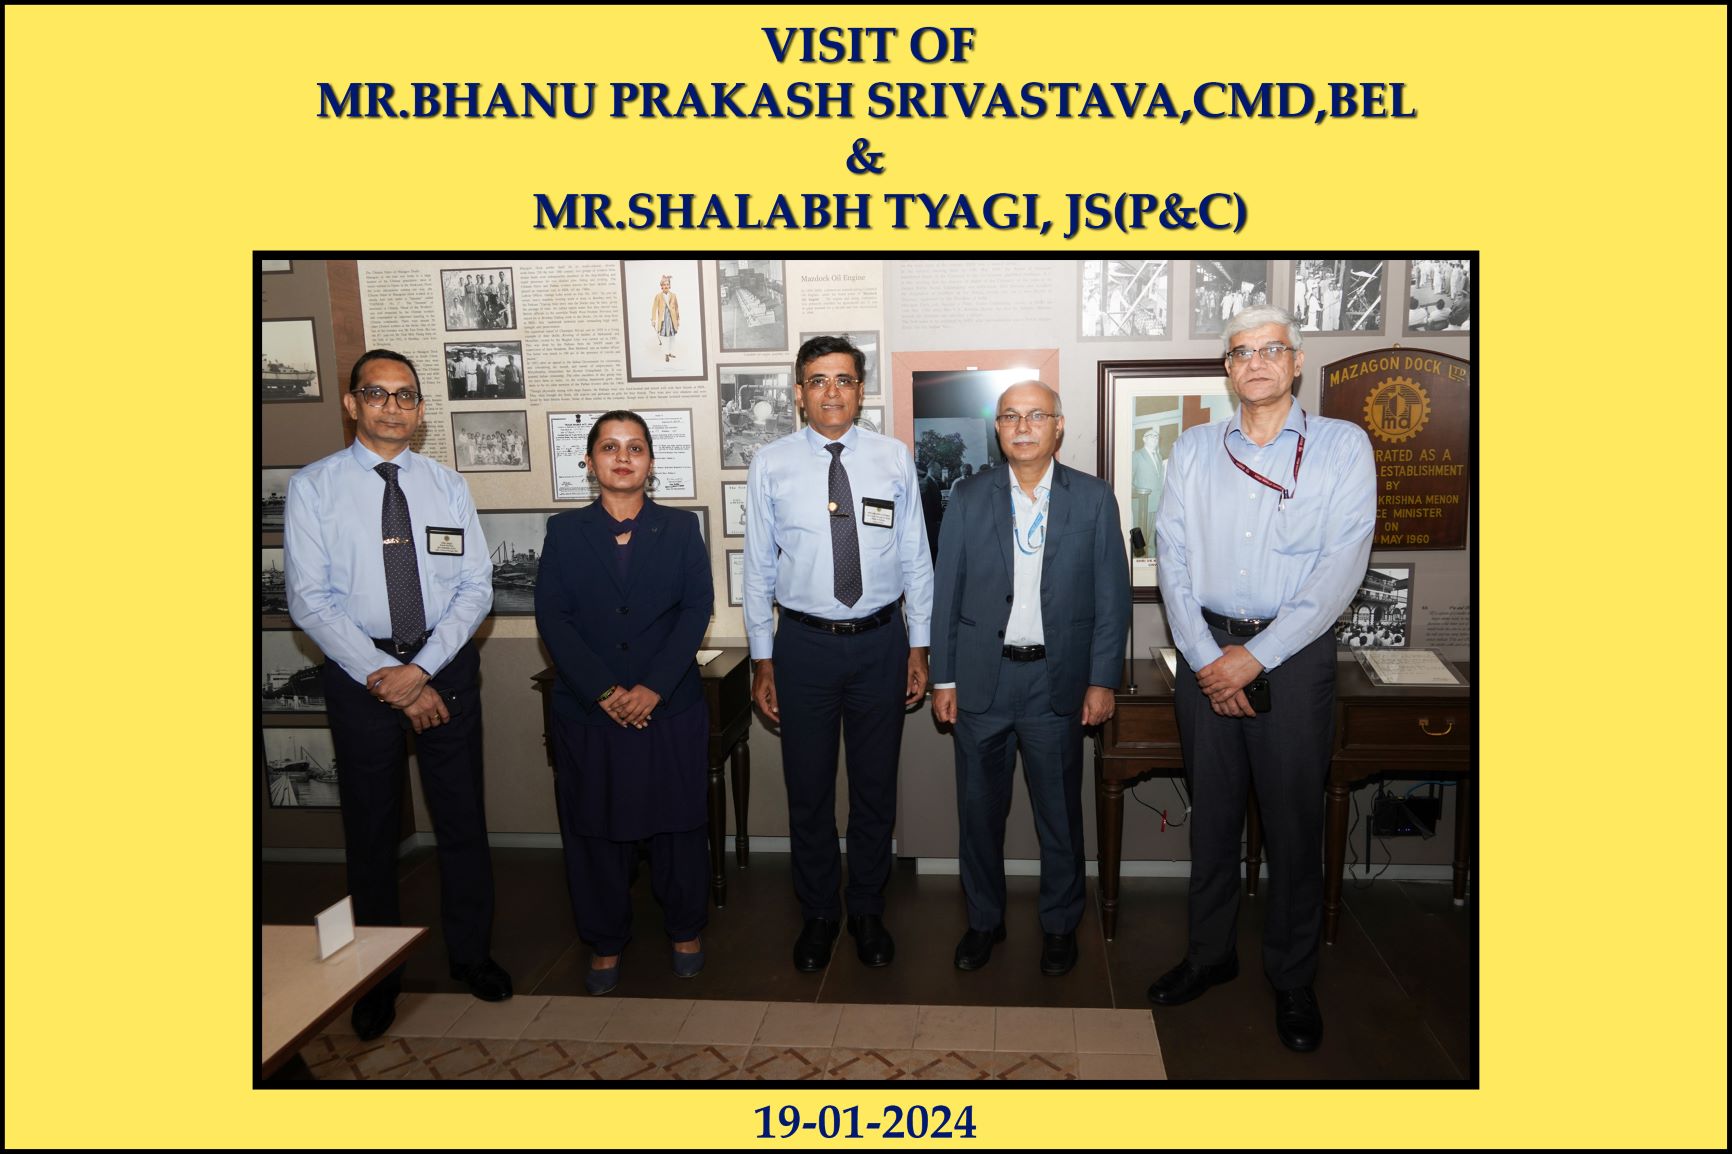 VISIT OF MR BHANU PRAKASH SRIVASTAVA, CMD, BEL & MR SHALABH TYAGI, JS (P&C) - 19.01.2024